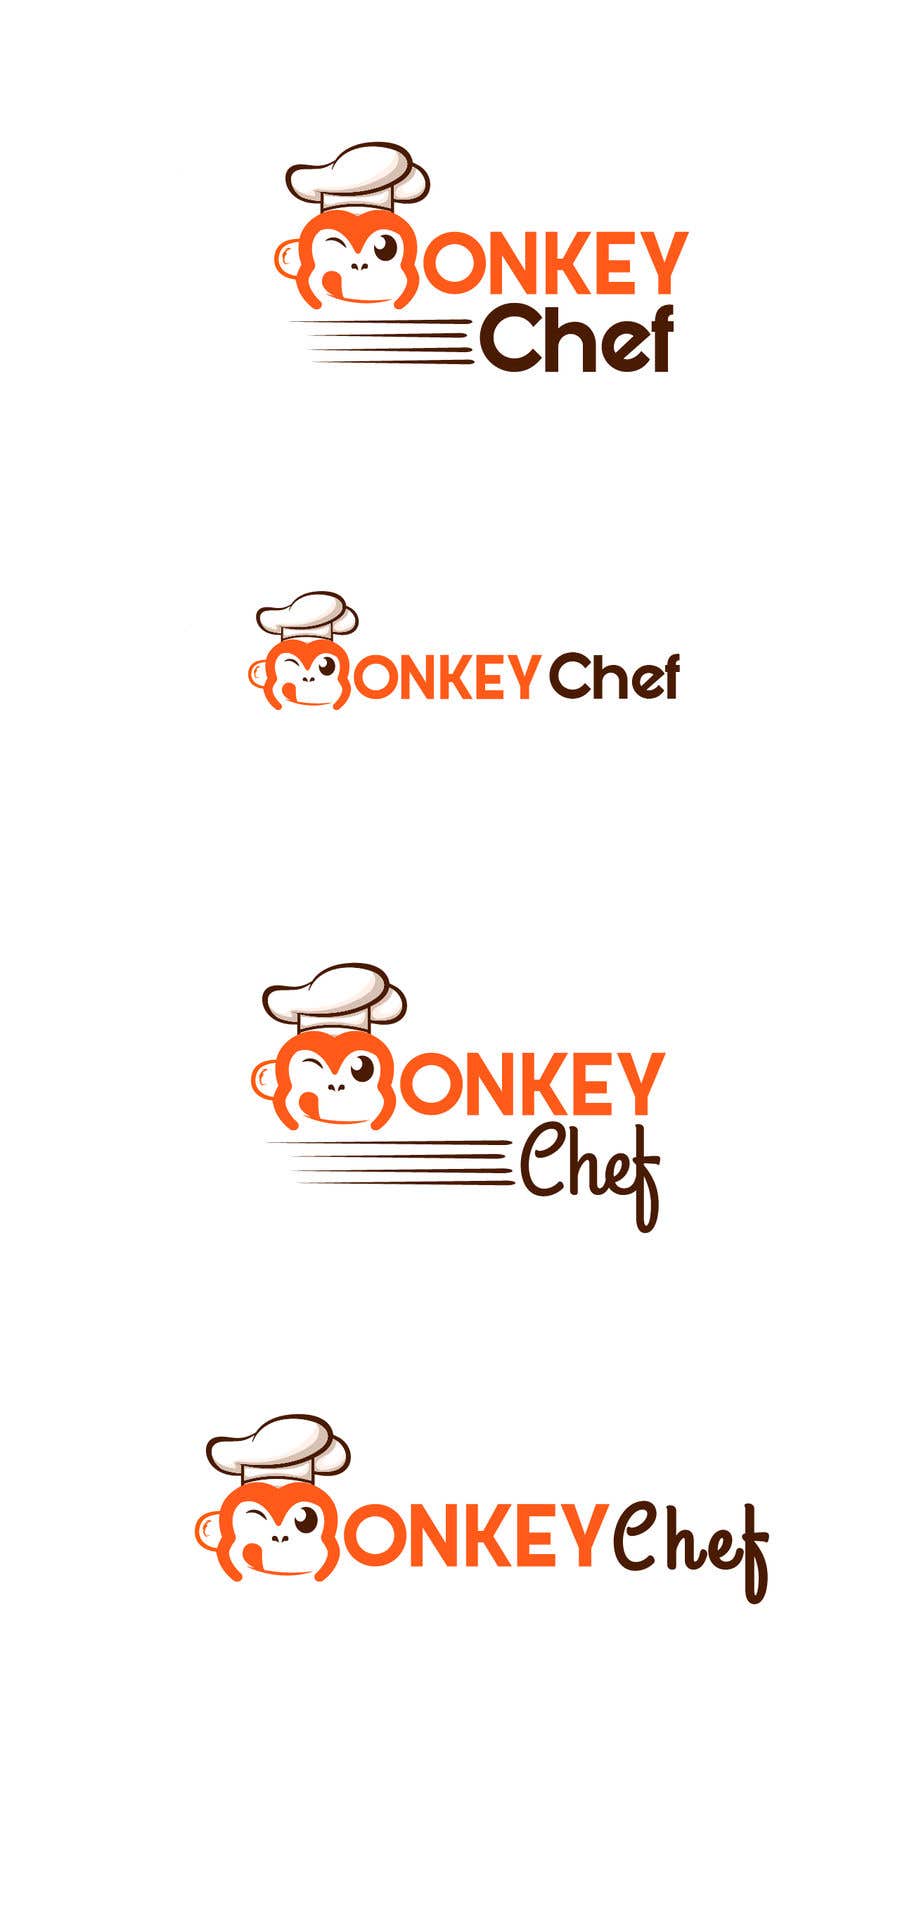 Zgłoszenie konkursowe o numerze #127 do konkursu o nazwie                                                 Logo design / Diseño de logo    Monkey Chef
                                            